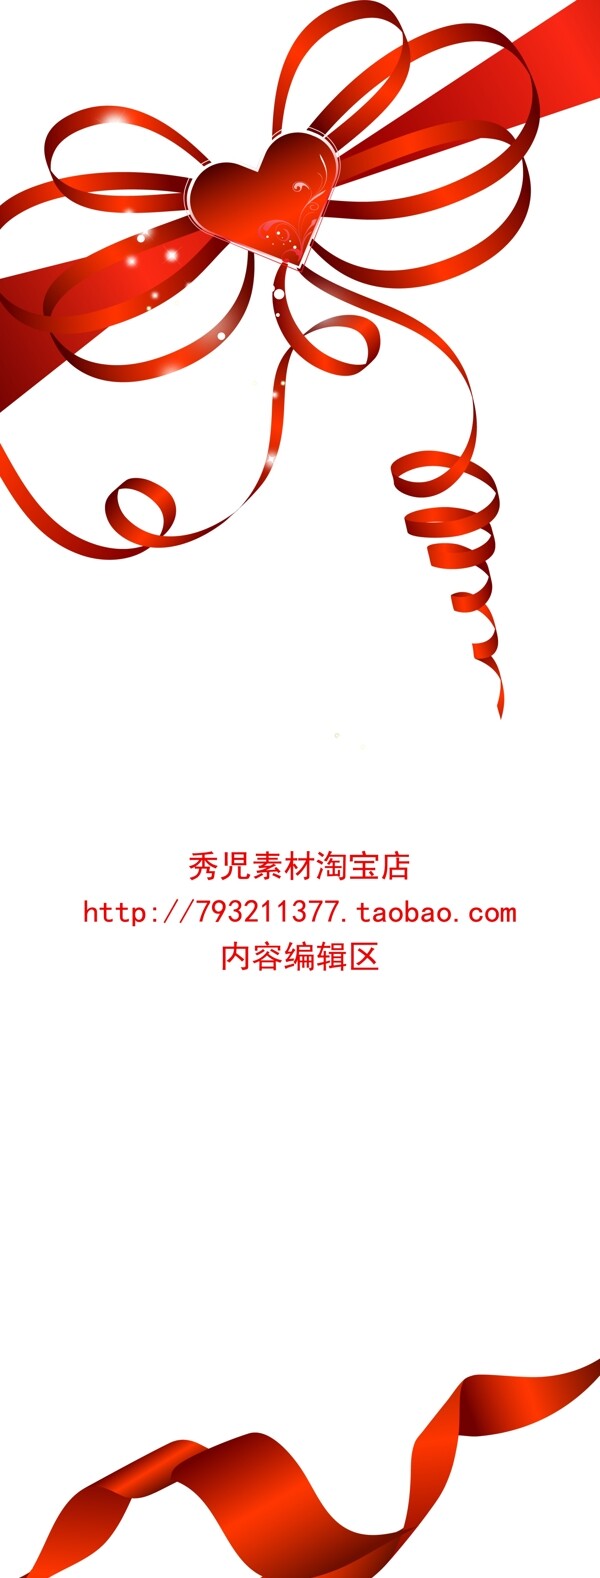 精美红色中国结展架设计素材画面